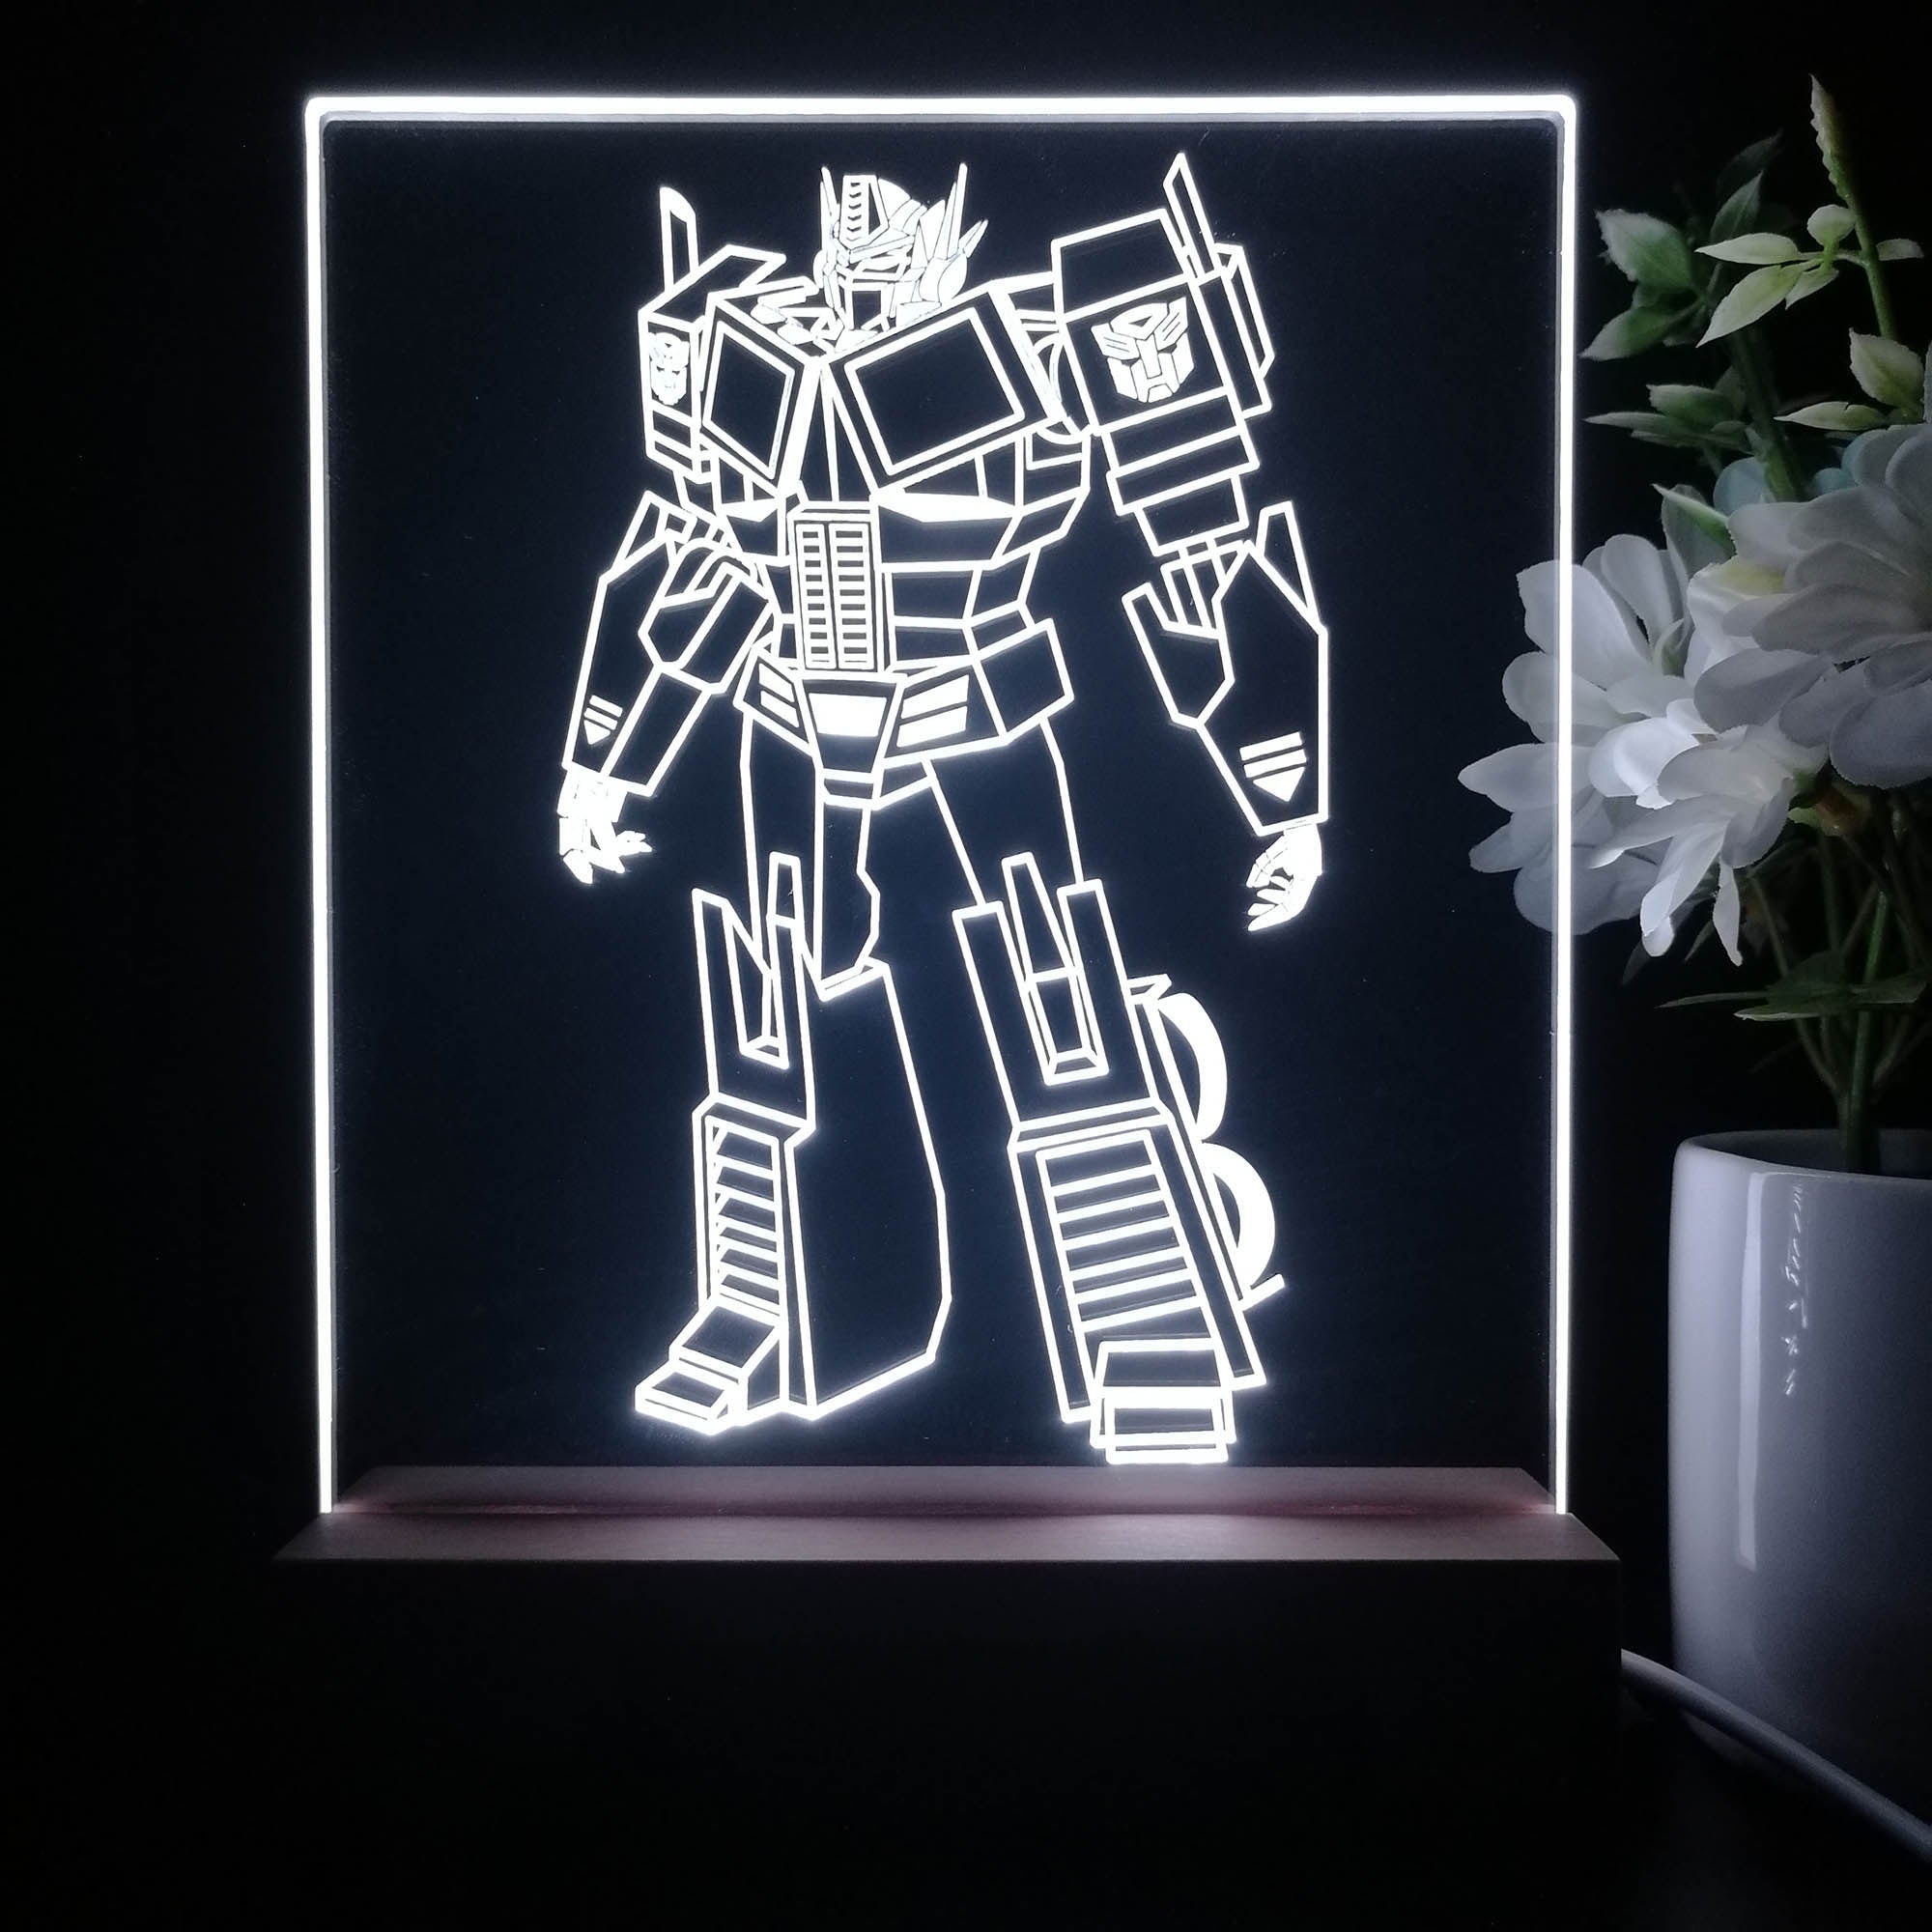 Transformers optimus prime Game Room LED Sign Lamp Display